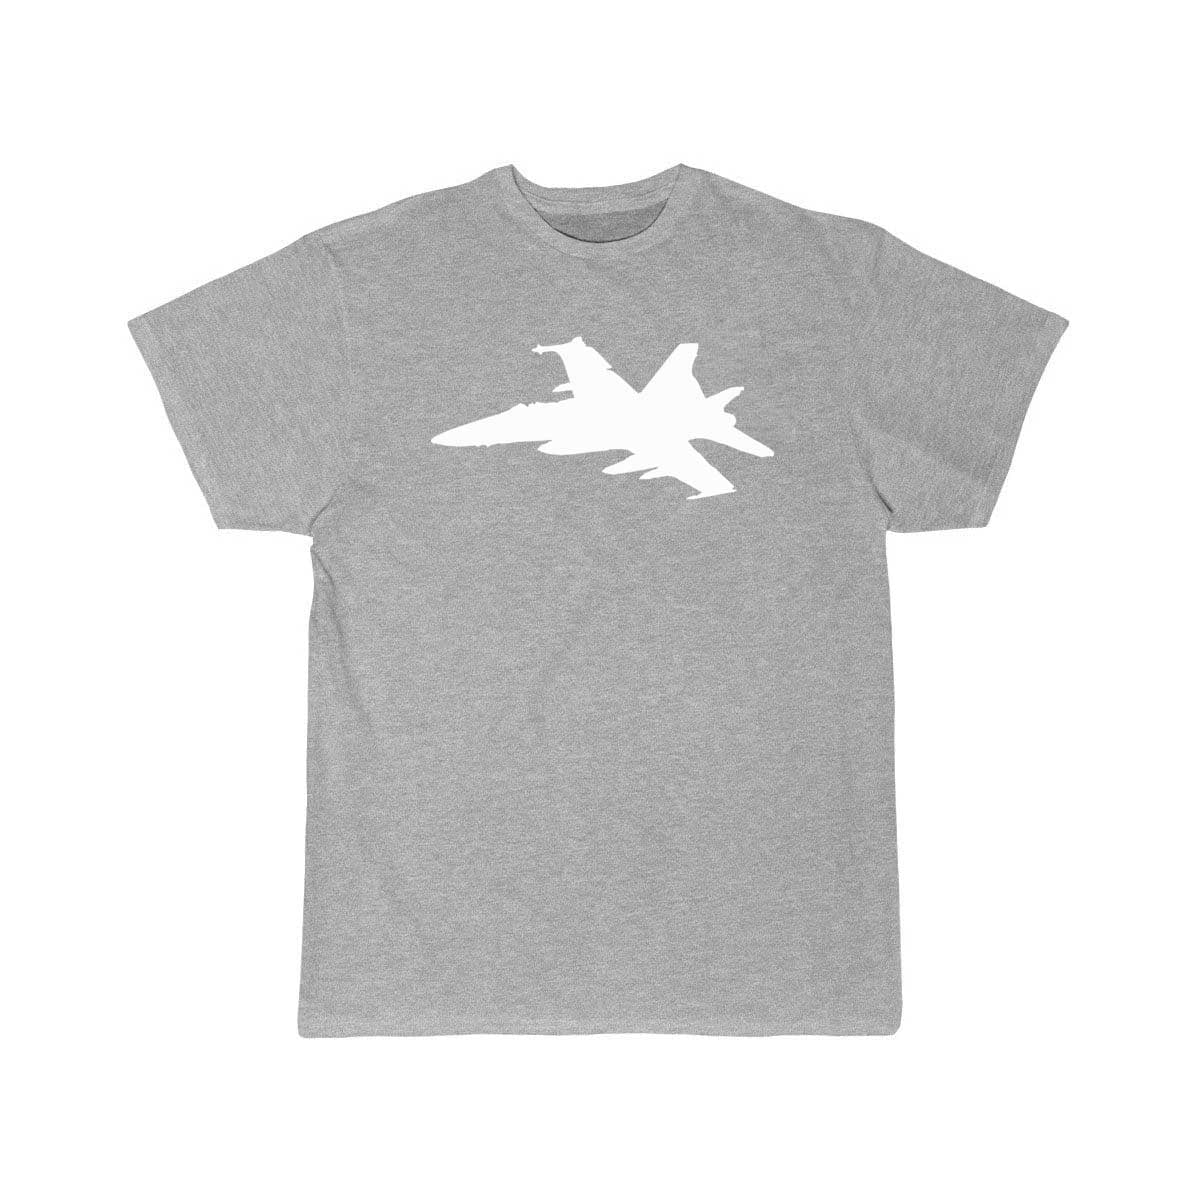 Airplane Fighter T Shirt THE AV8R